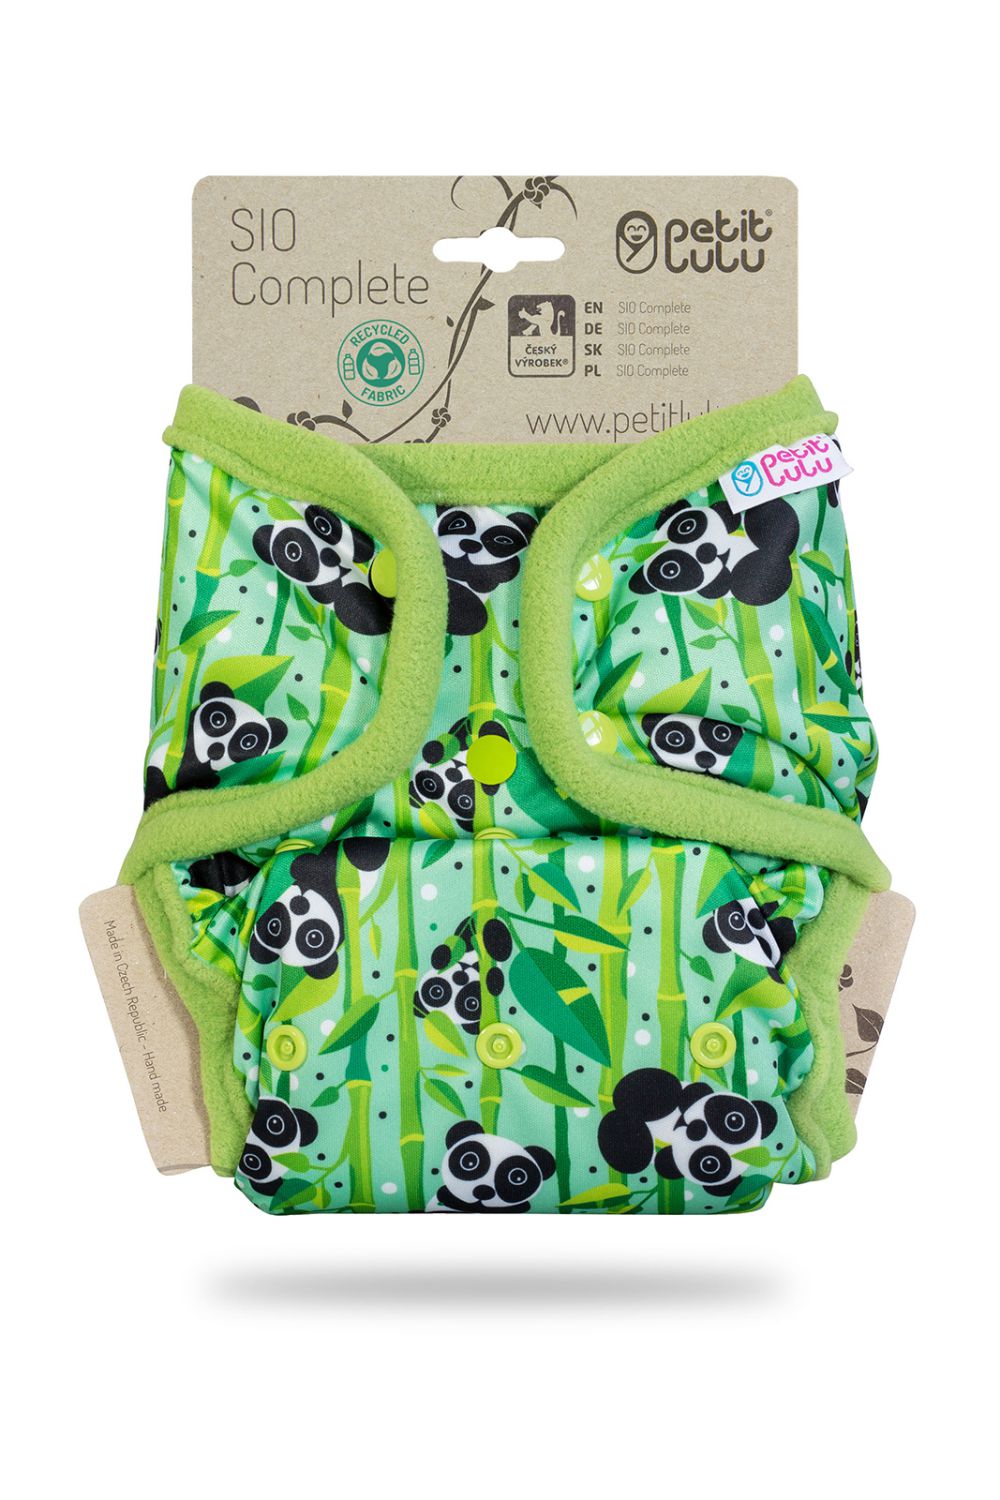 Petit Lulu One Size SIO Complete with Inserts (Snaps) Petit Lulu pattern: Panda Bears